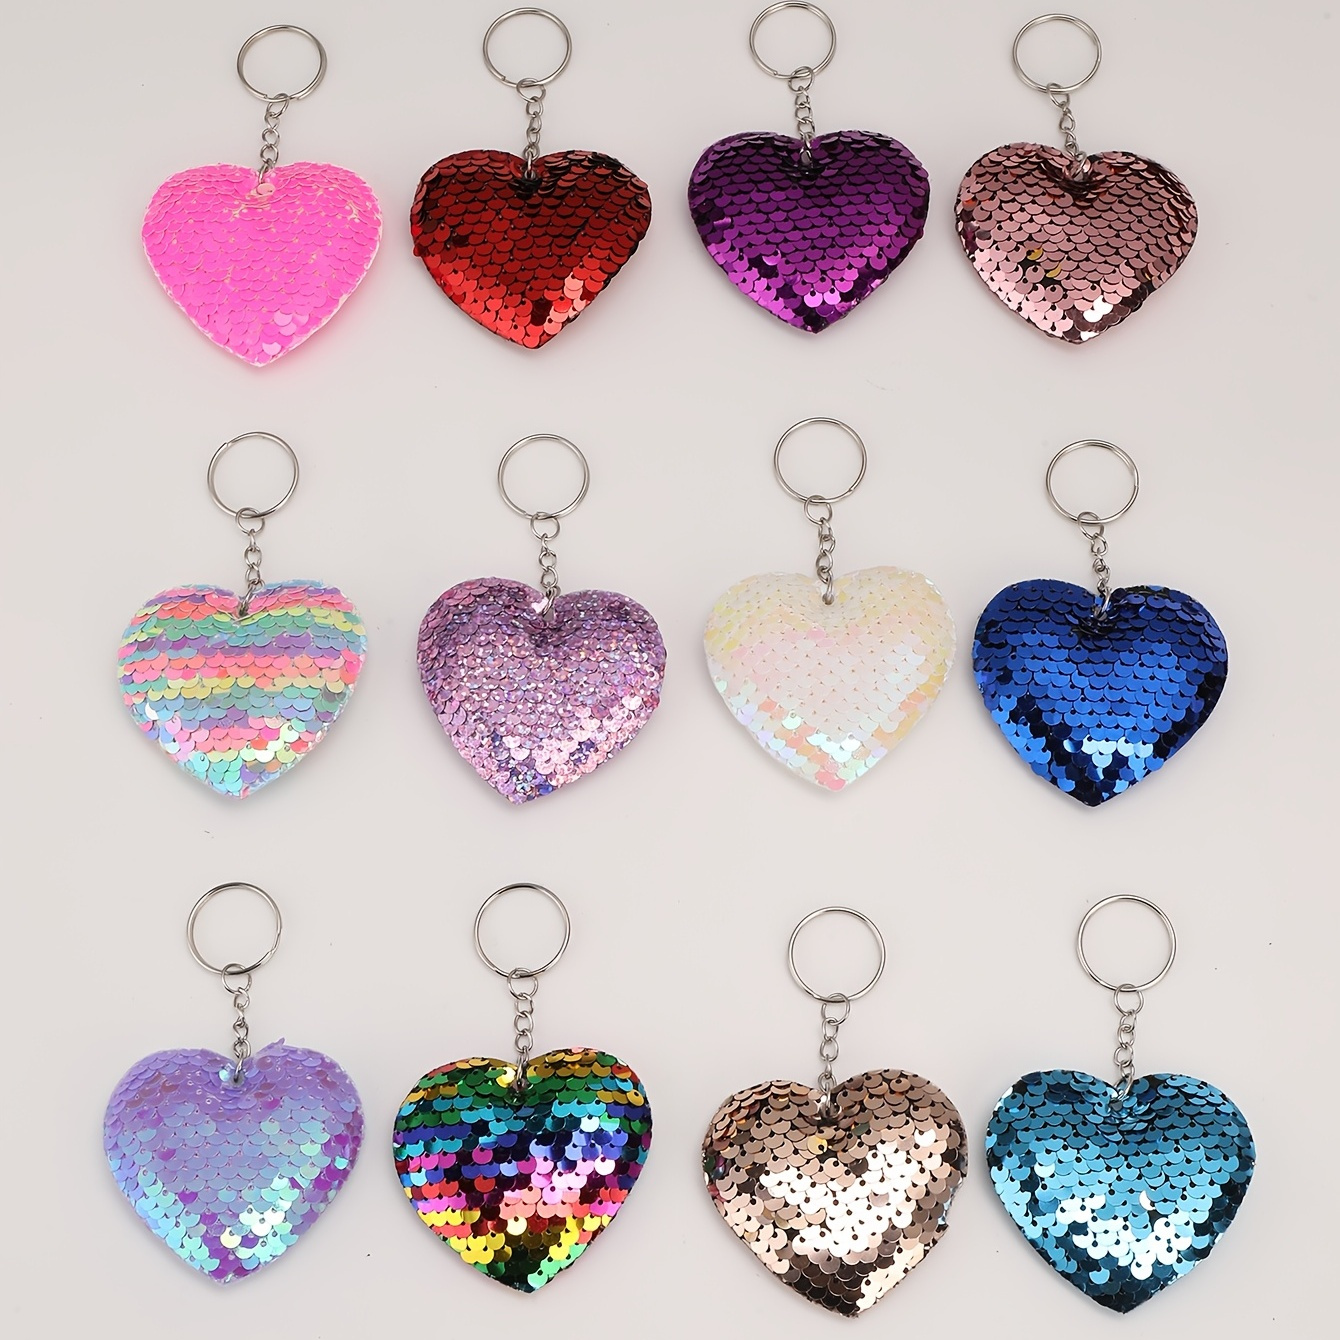 

12pcs Sequin Love Heart Keychain Cute Cartoon Bag Key Chain Keyring Ornament Bag Purse Charm Accessories